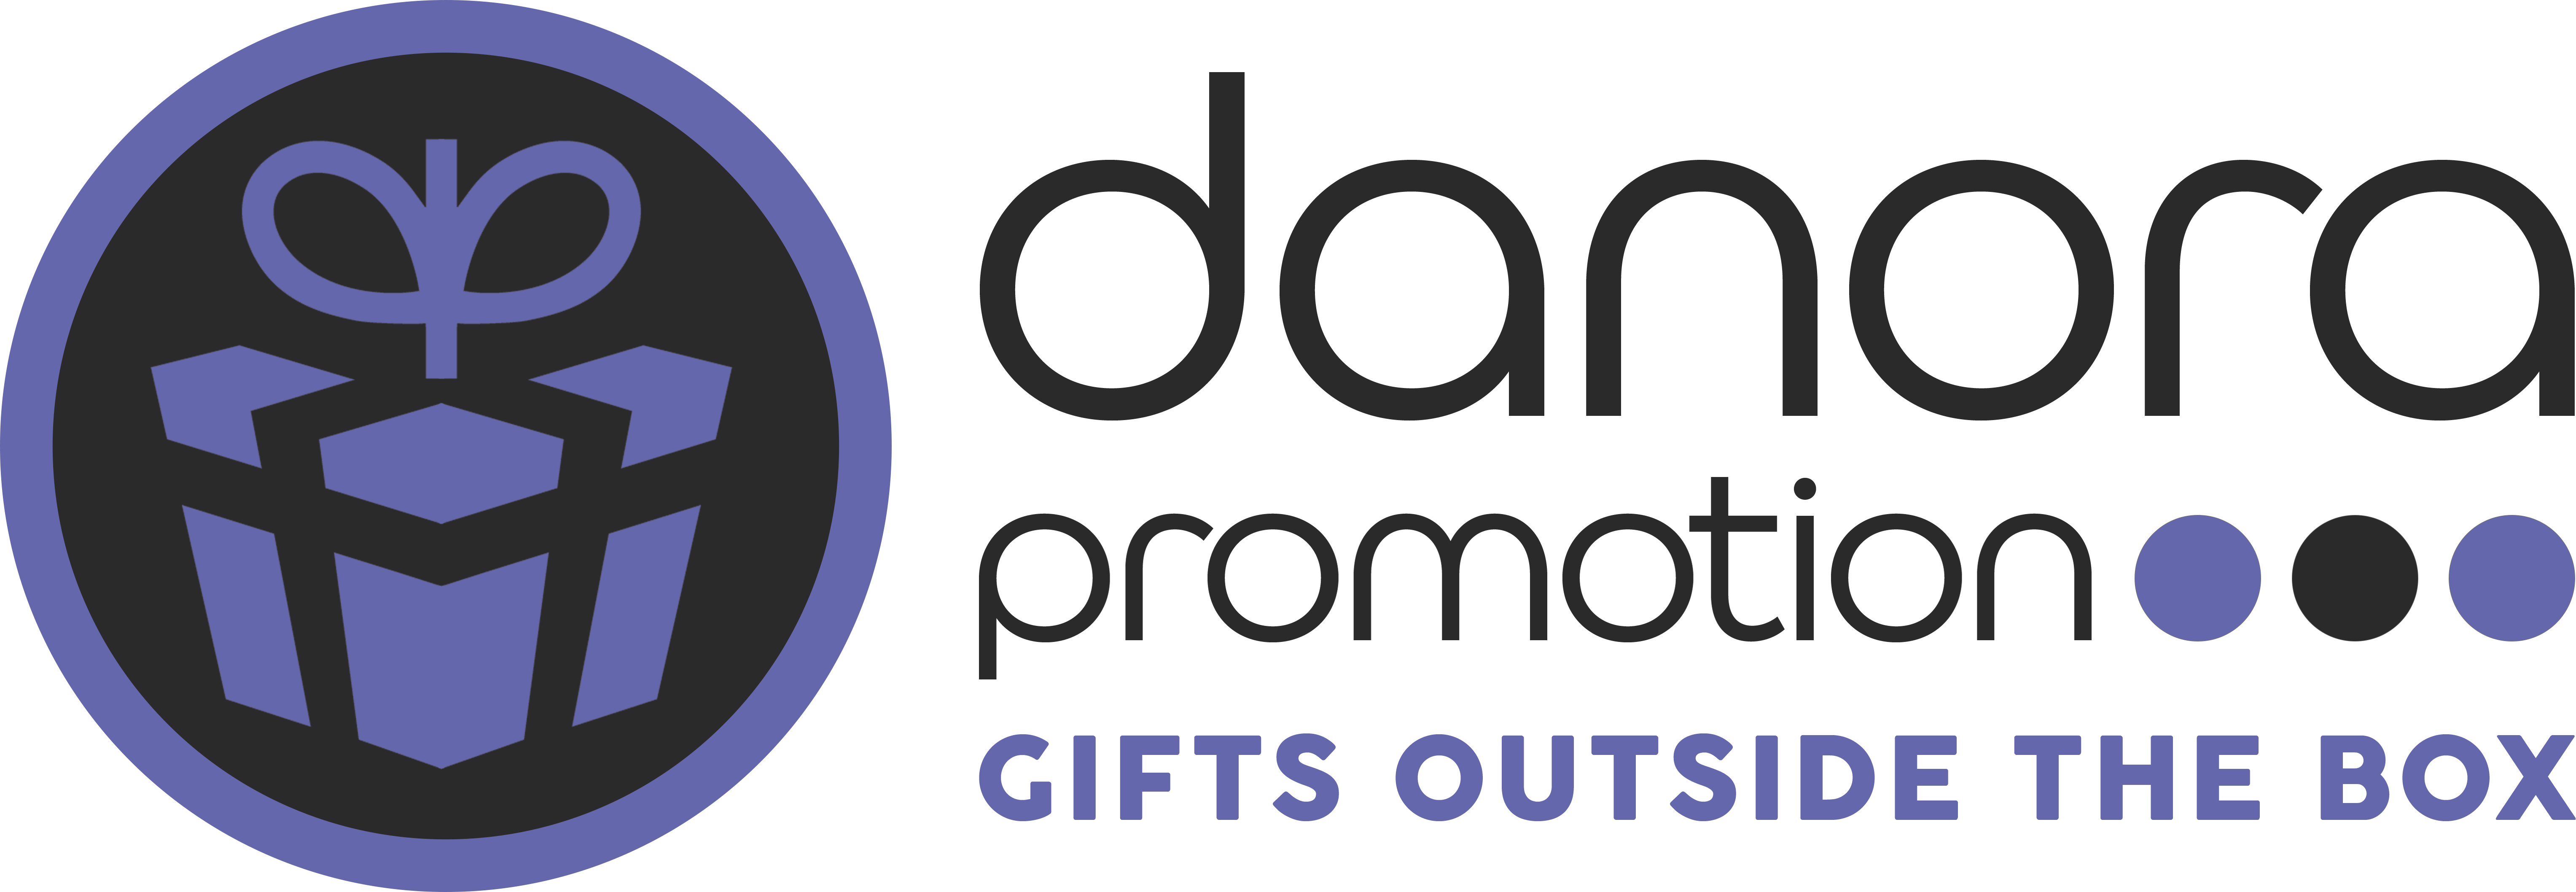 Danora Promotion ›› Ihr Fullservice-Partner für Werbeartikel, Textilien & Sonderanfertigungen.